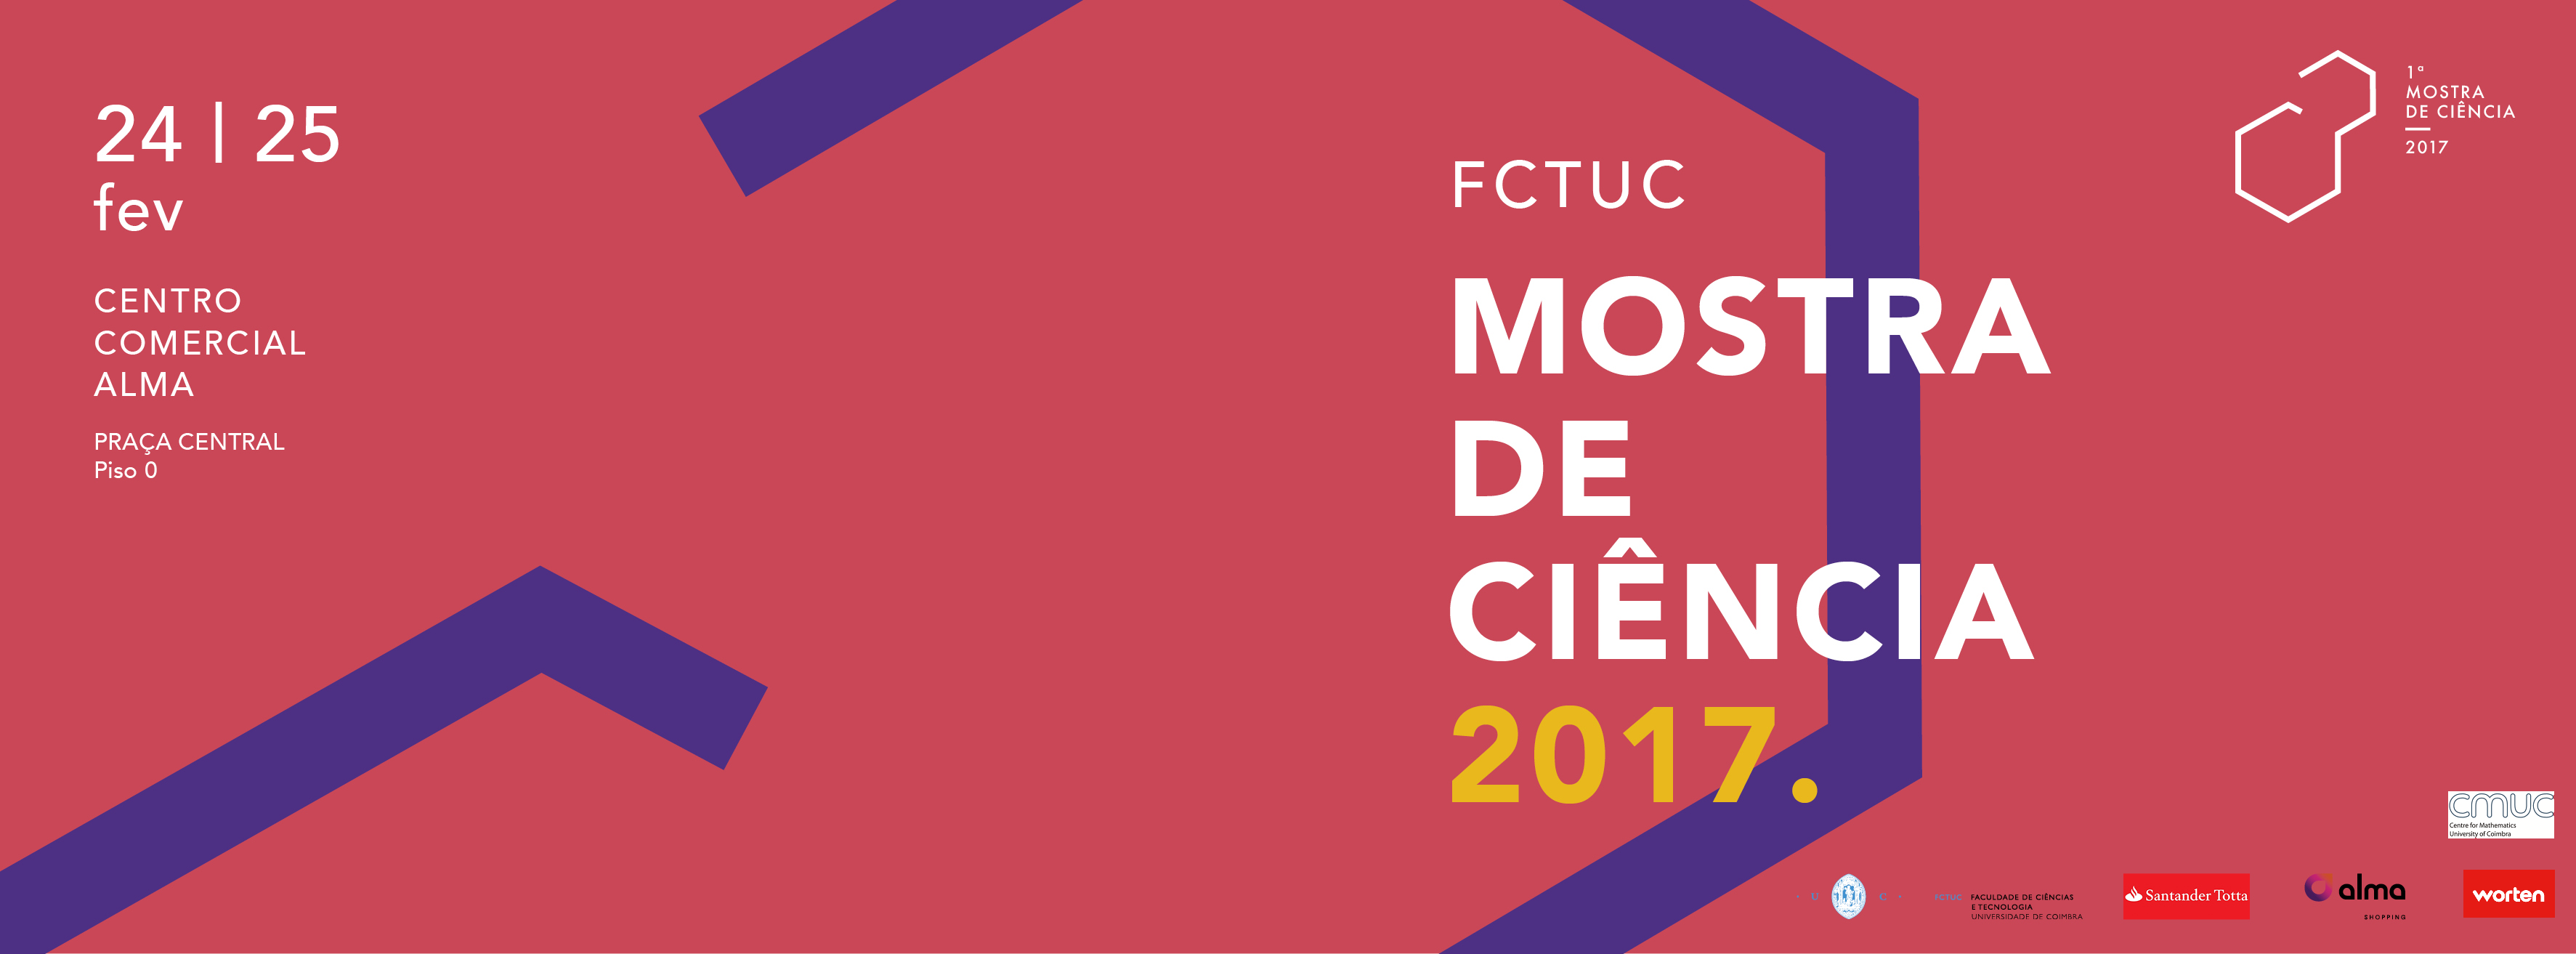 Mostra FCTUC 2017